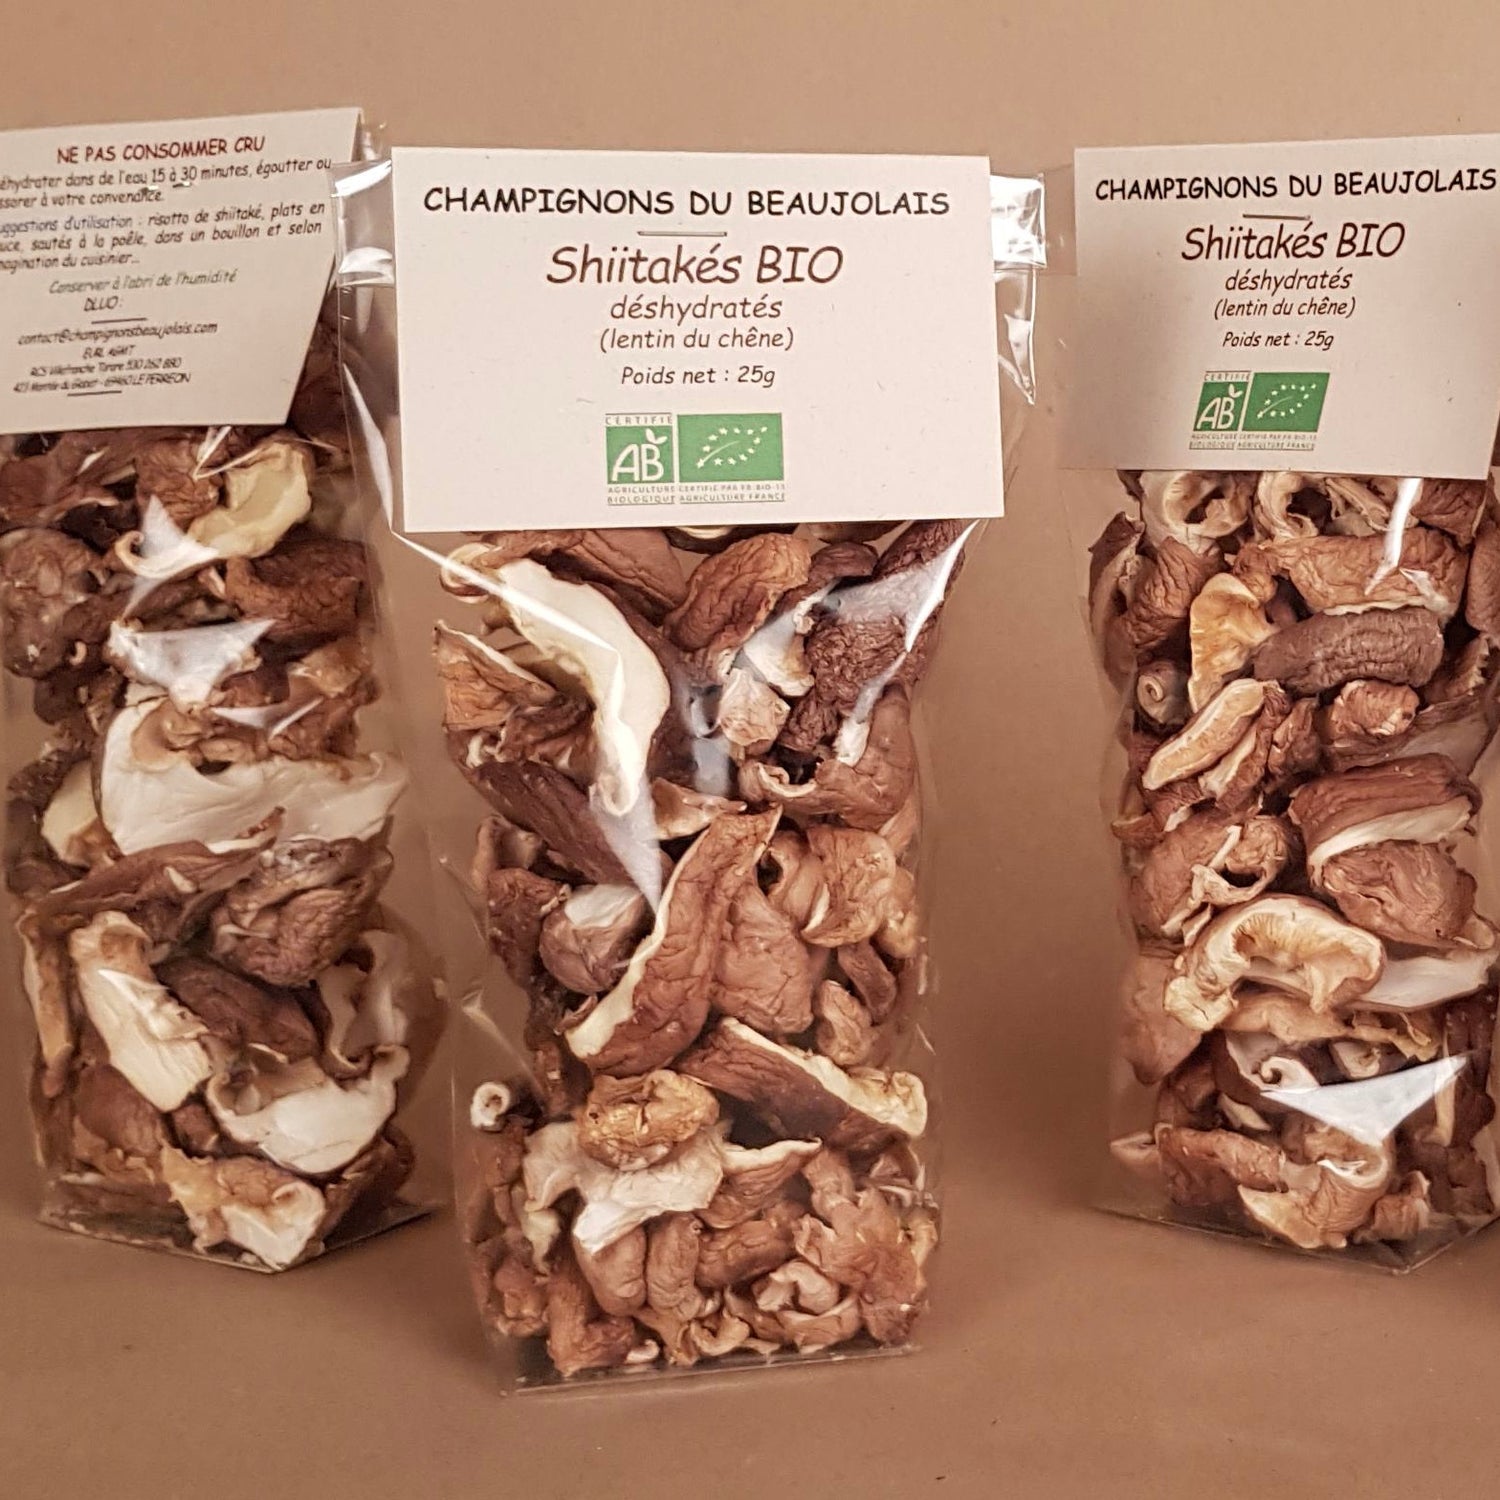 25g sachet champignons shiitakés lentins du chêne déshydratés Champignons du Beaujolais Perréon